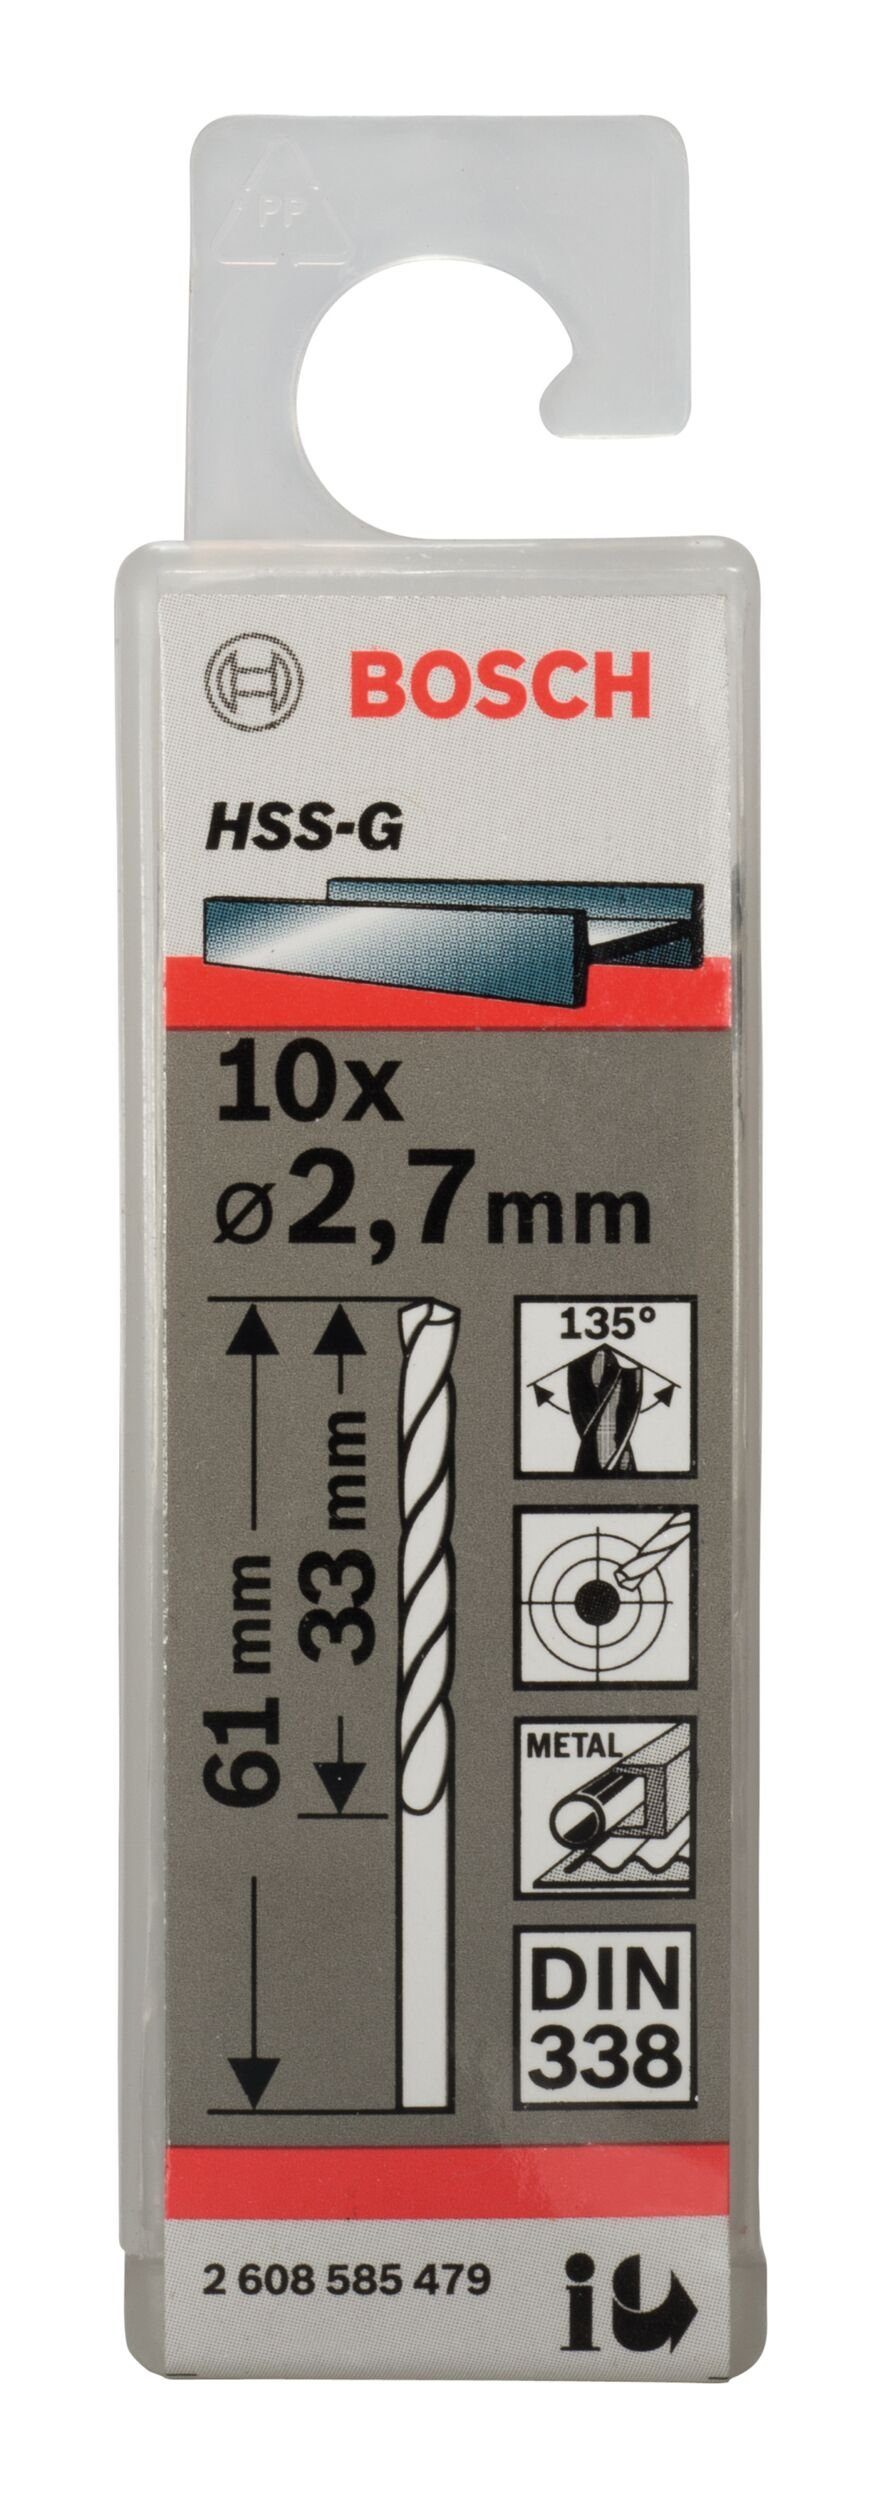 2,7 mm Metallbohrer, 10er-Pack 61 x Stück), 338) - (DIN HSS-G 33 BOSCH (10 - x